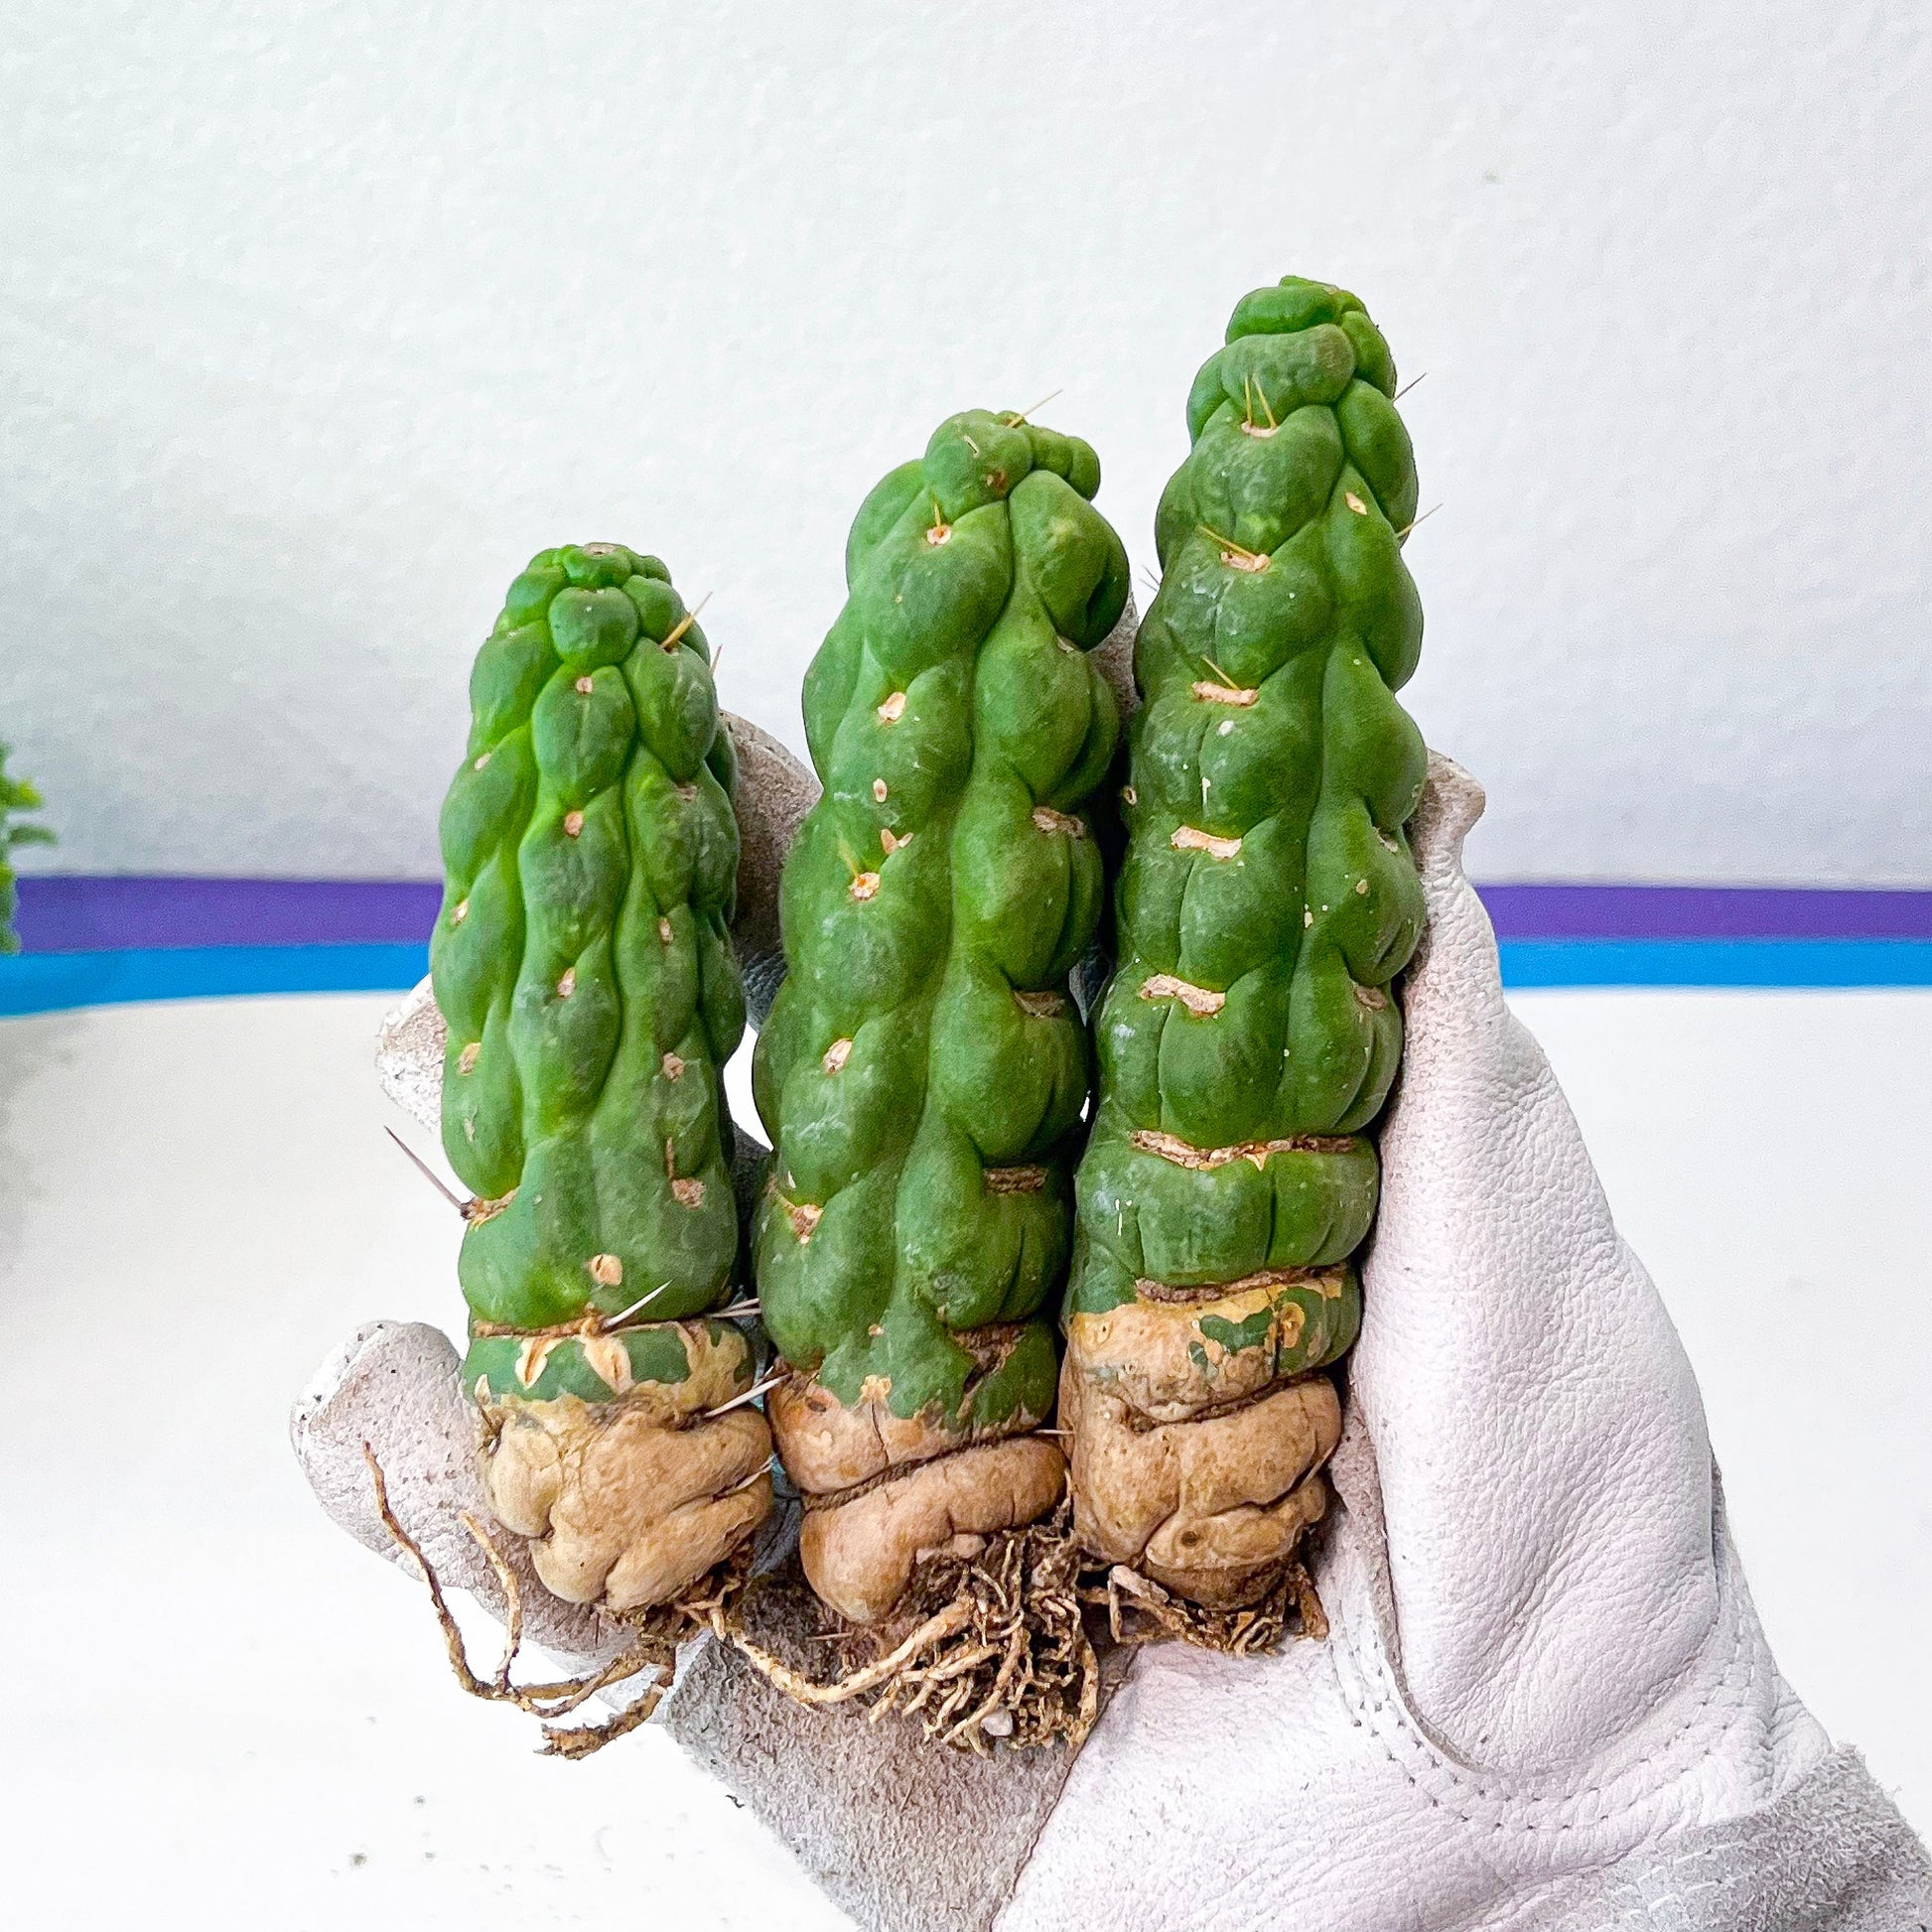 Eulychnia Castanea Spiralis Hort | Unicorn Horn Cactus| Rare Cactus | Very Rare Import